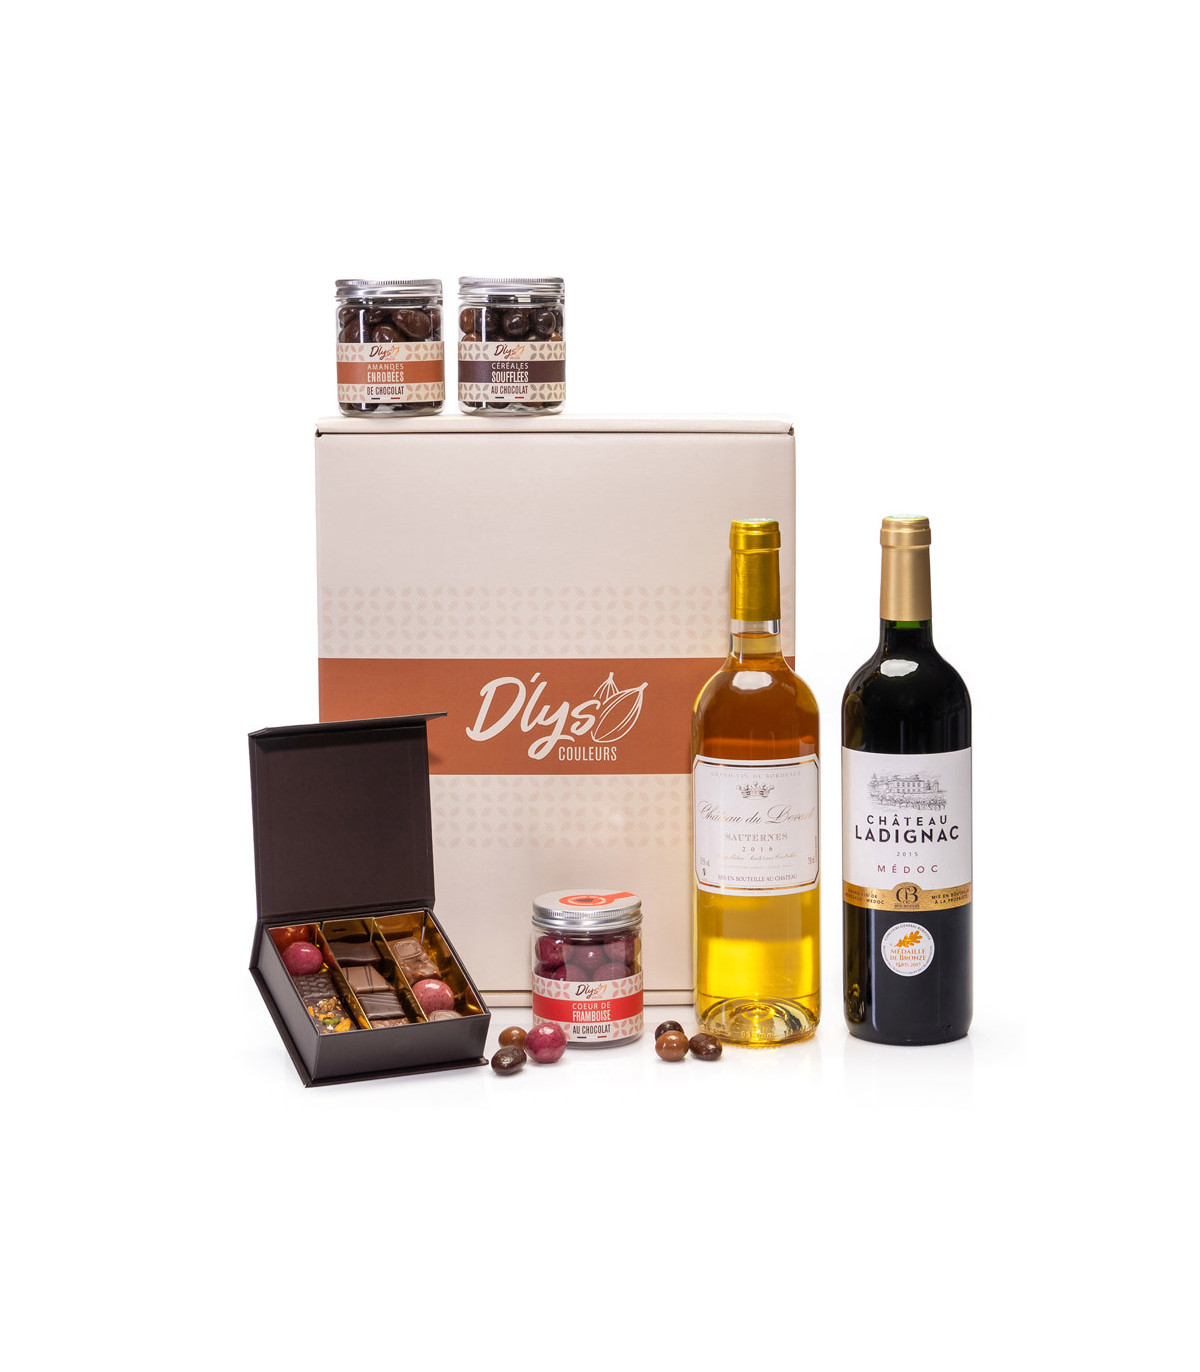 Offrir chocolats et vin - Idée cadeau noël D'lys couleurs